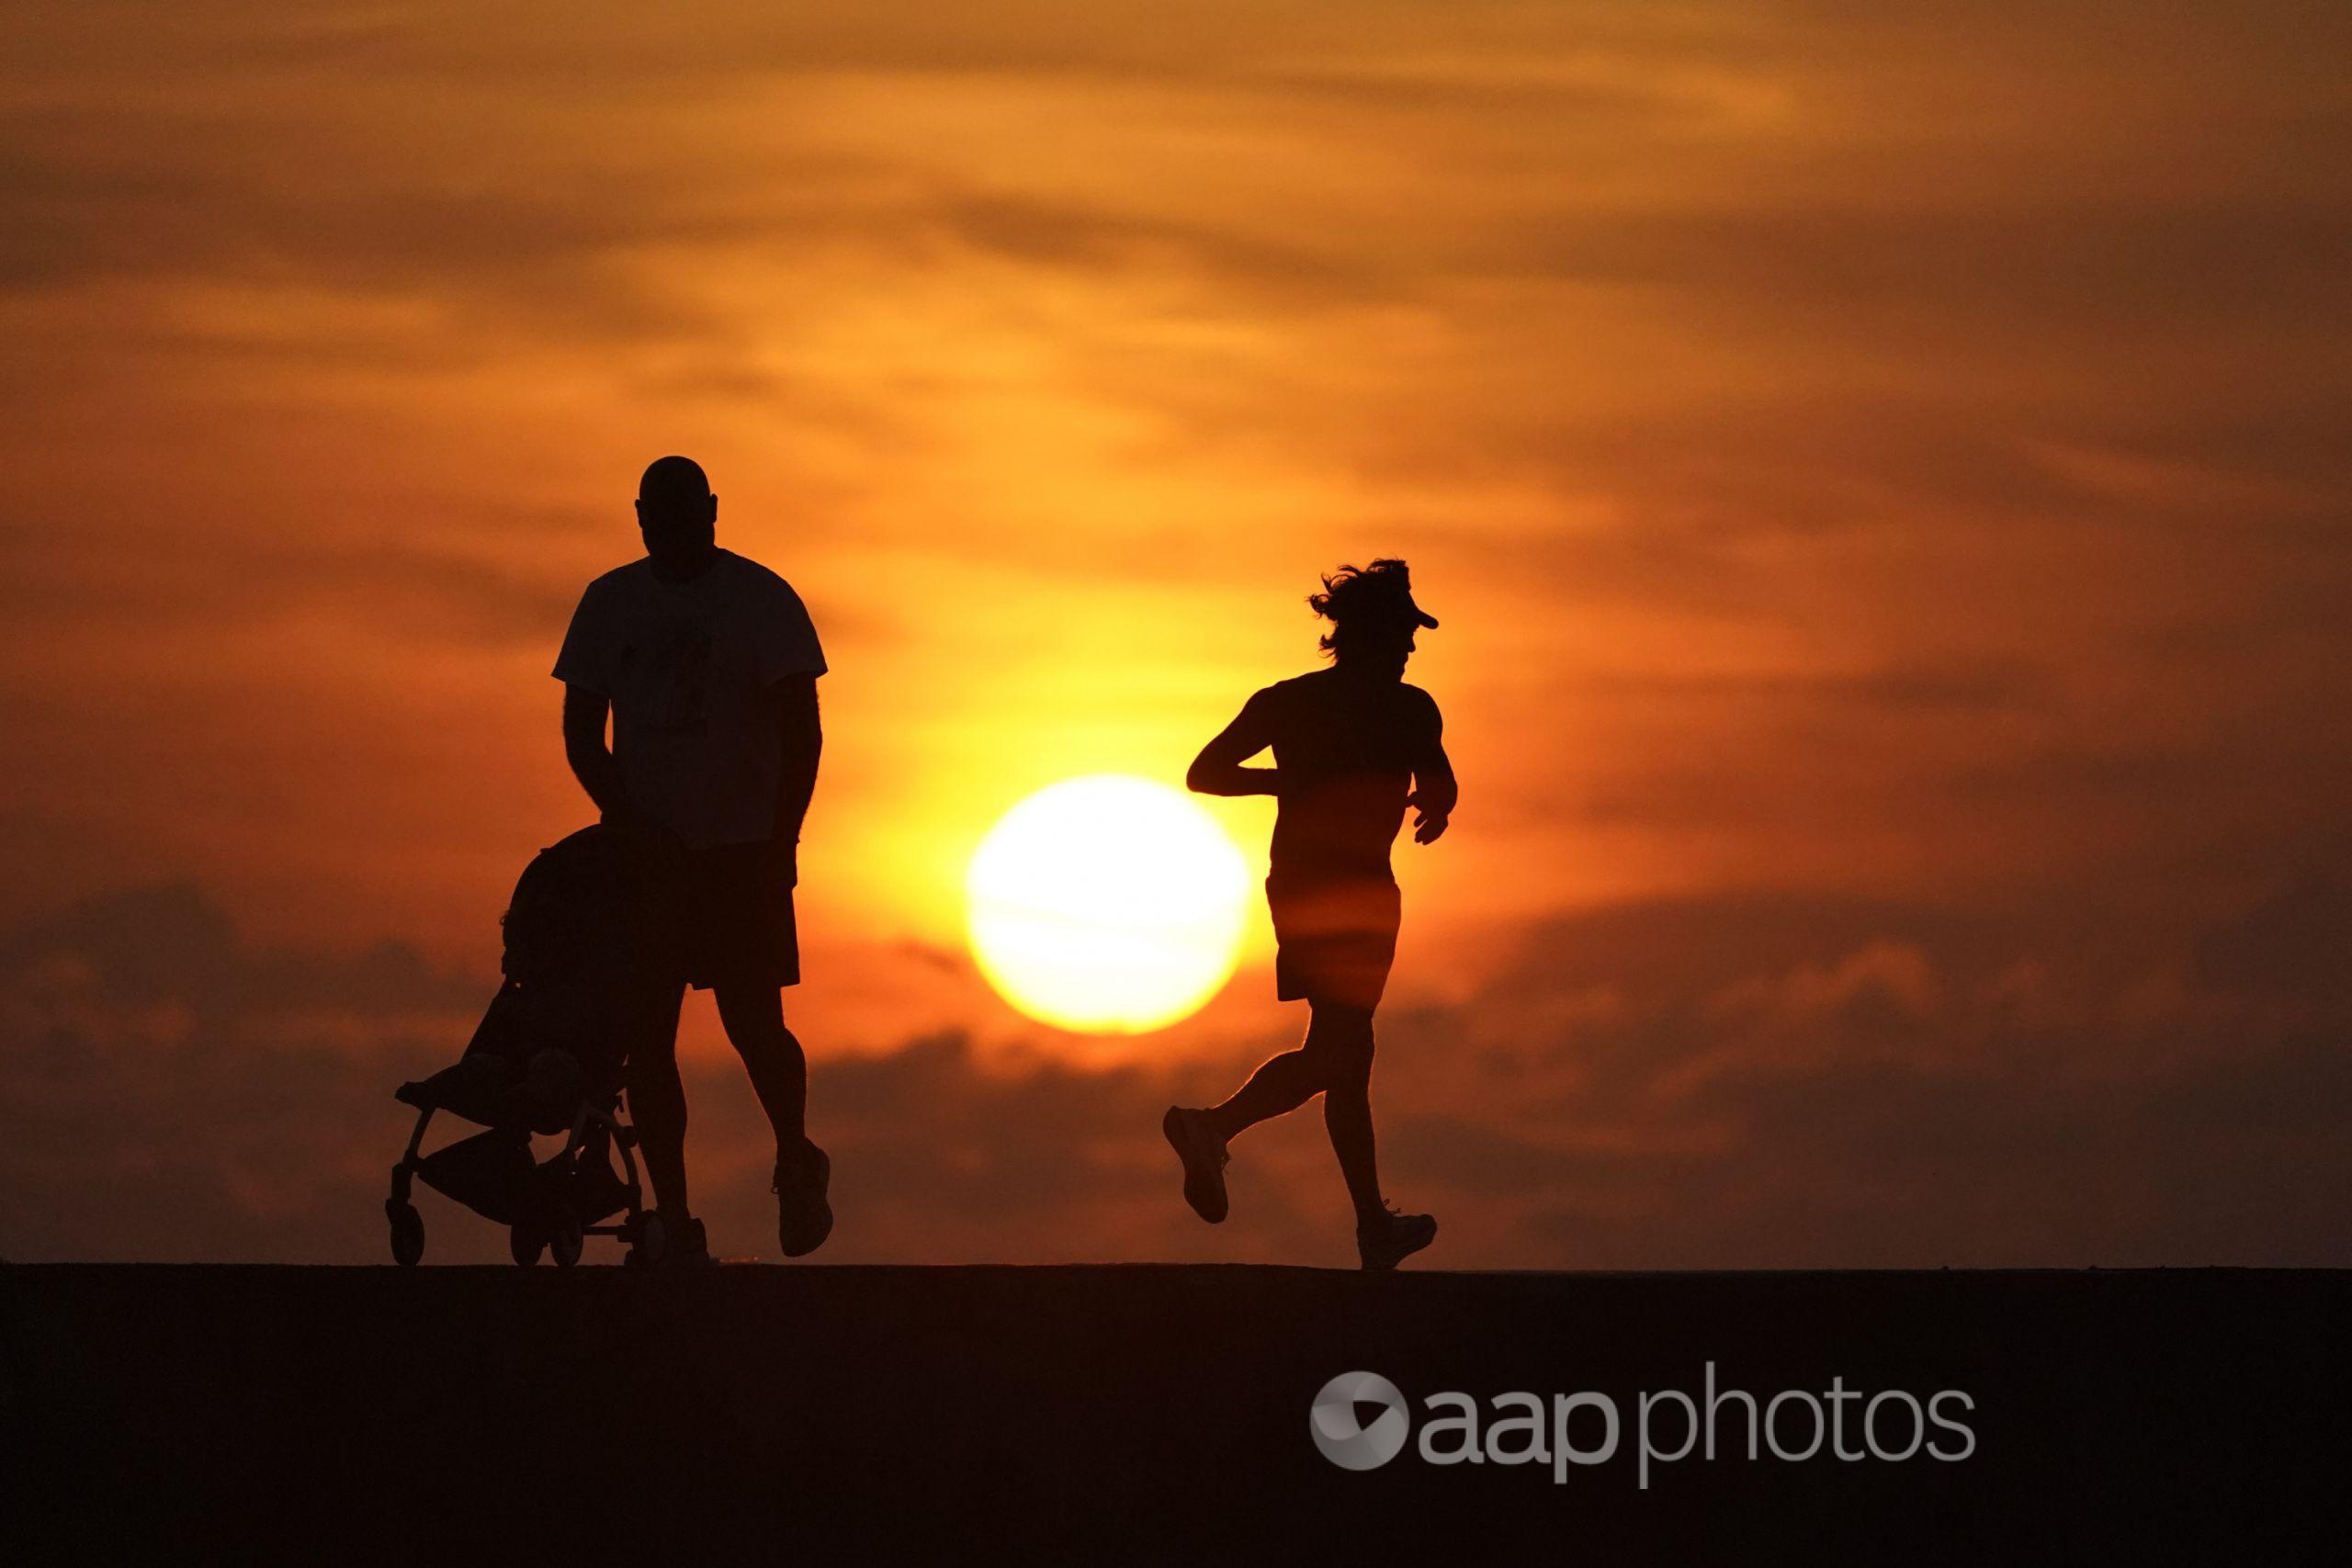 runner, man pushing pram silhouetted against a sunrise